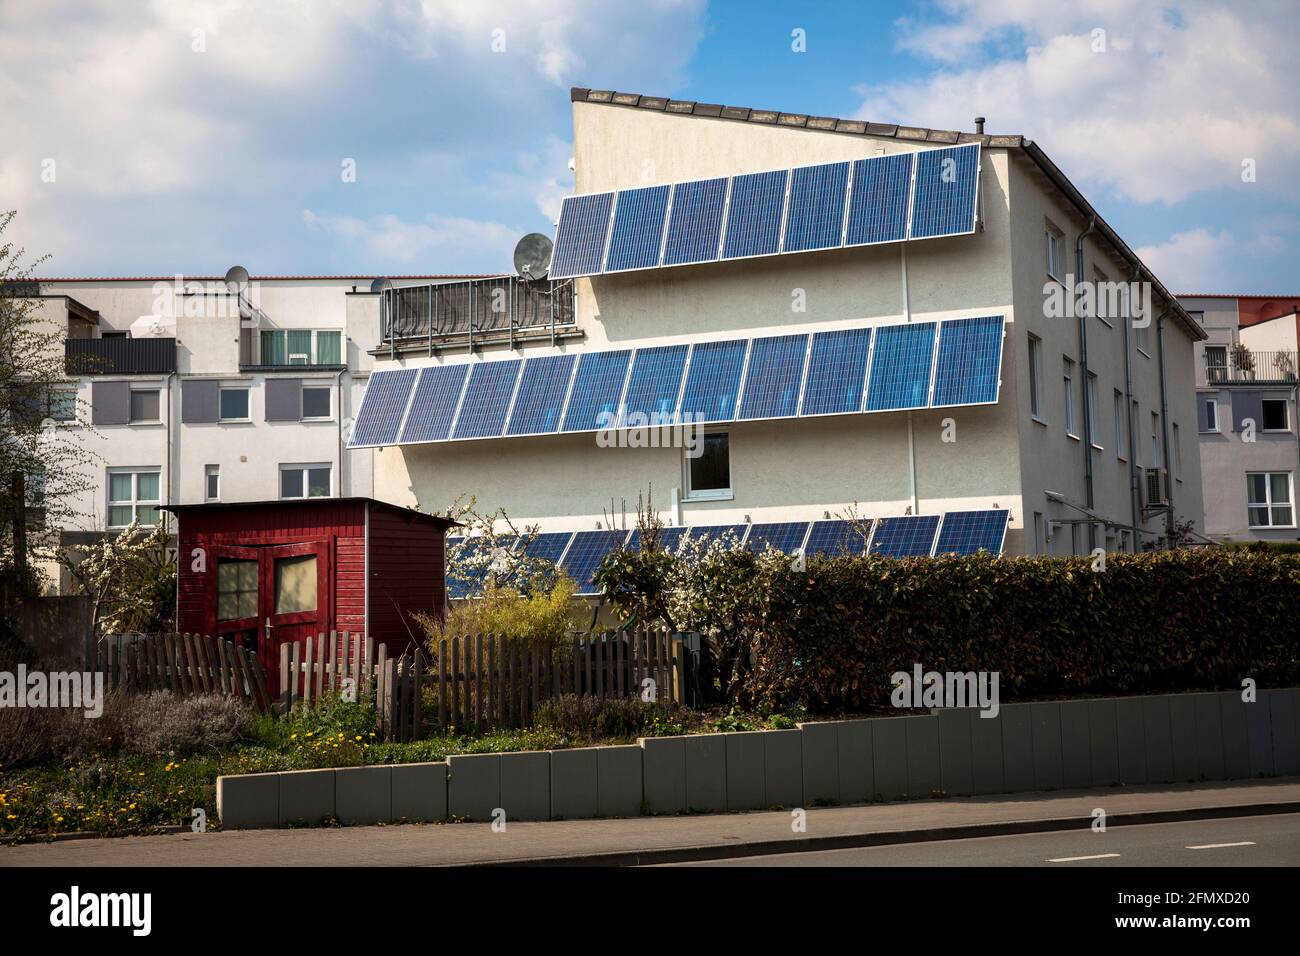 Modules photovoltaïques, panneaux solaires sur une maison dans le quartier Eichlinghofen, Dortmund, Rhénanie-du-Nord-Westphalie, Allemagne. Photovoltaikanlage, Solarmodule a Banque D'Images